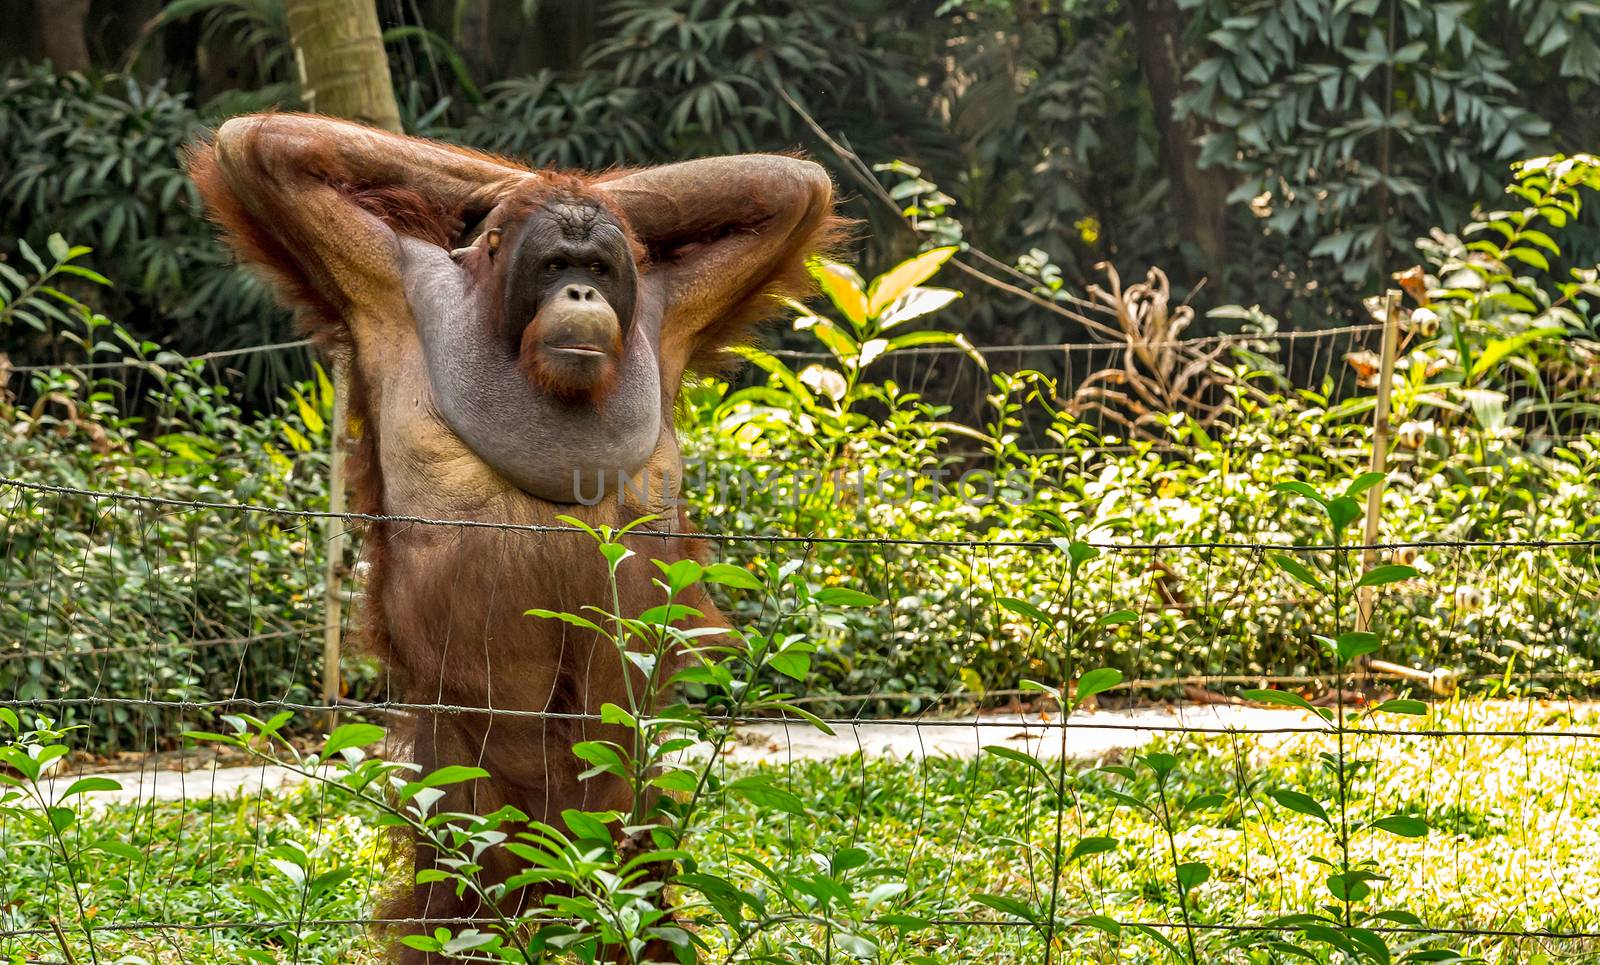 Portrait of Orangutan safari nature